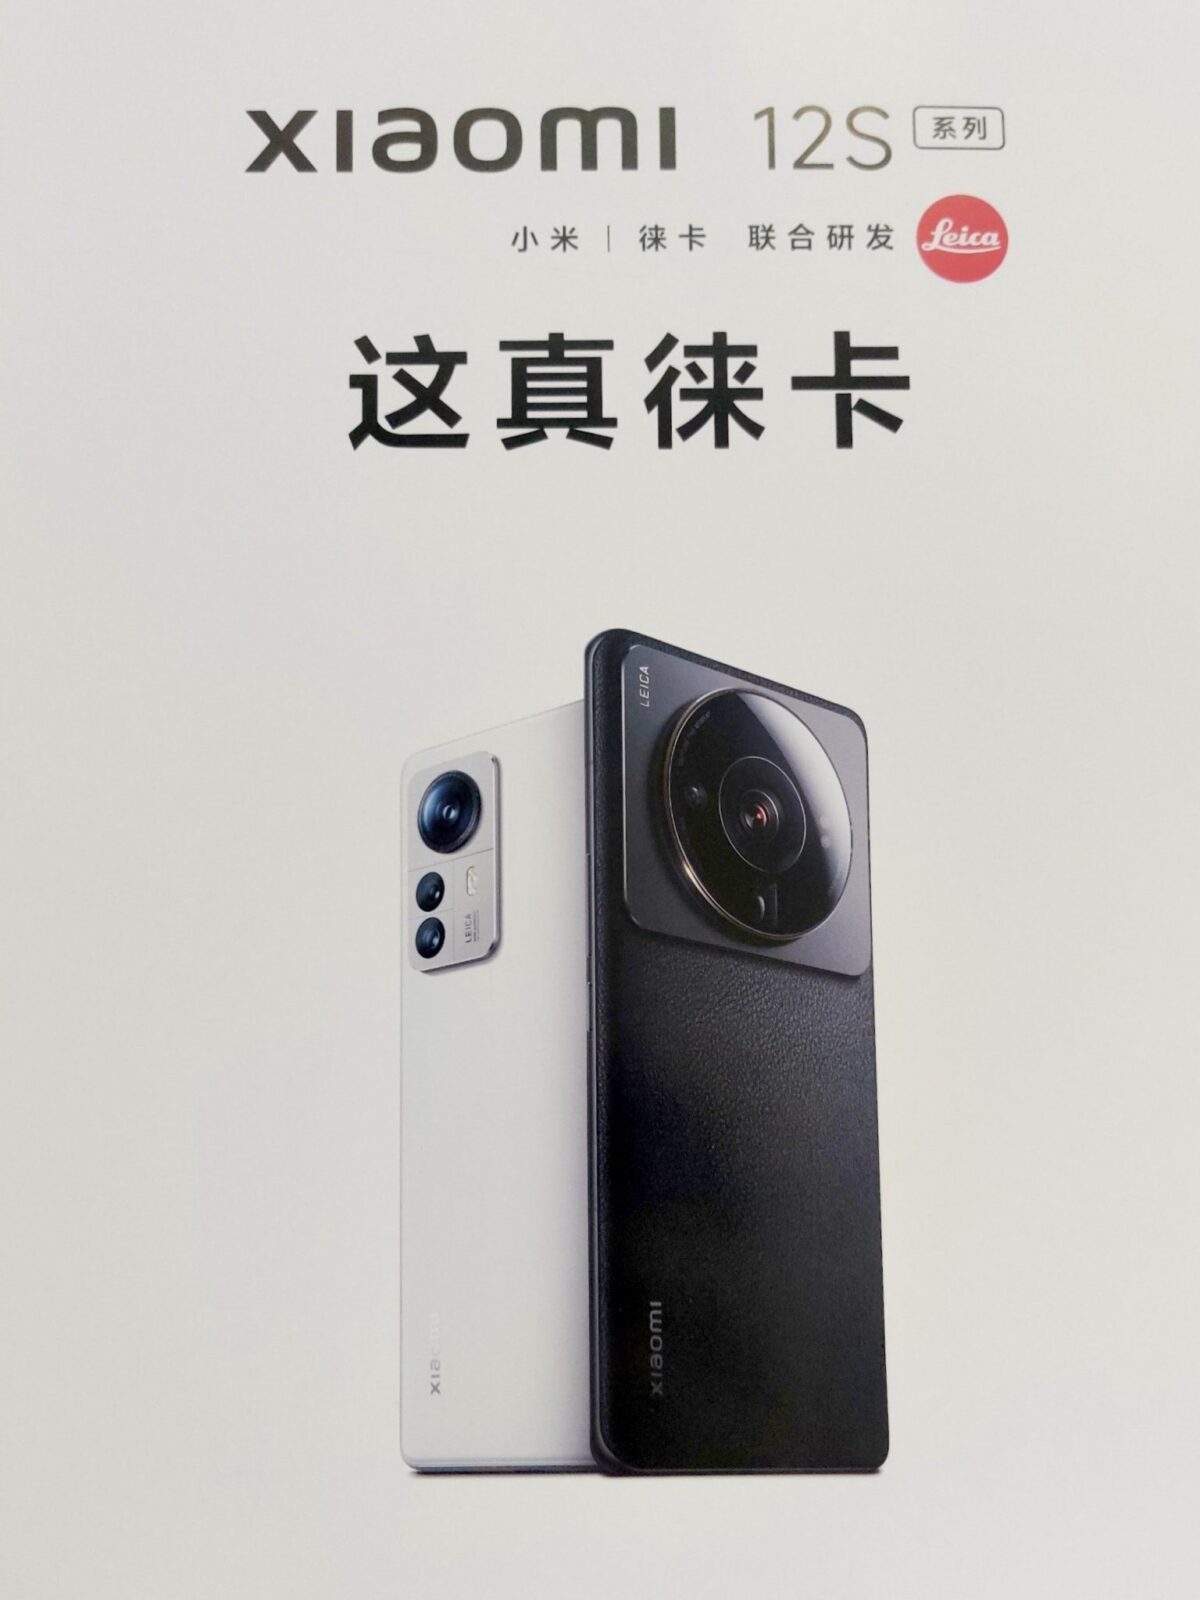 Раскрыта внешность смартфона Xiaomi с лучшей камерой